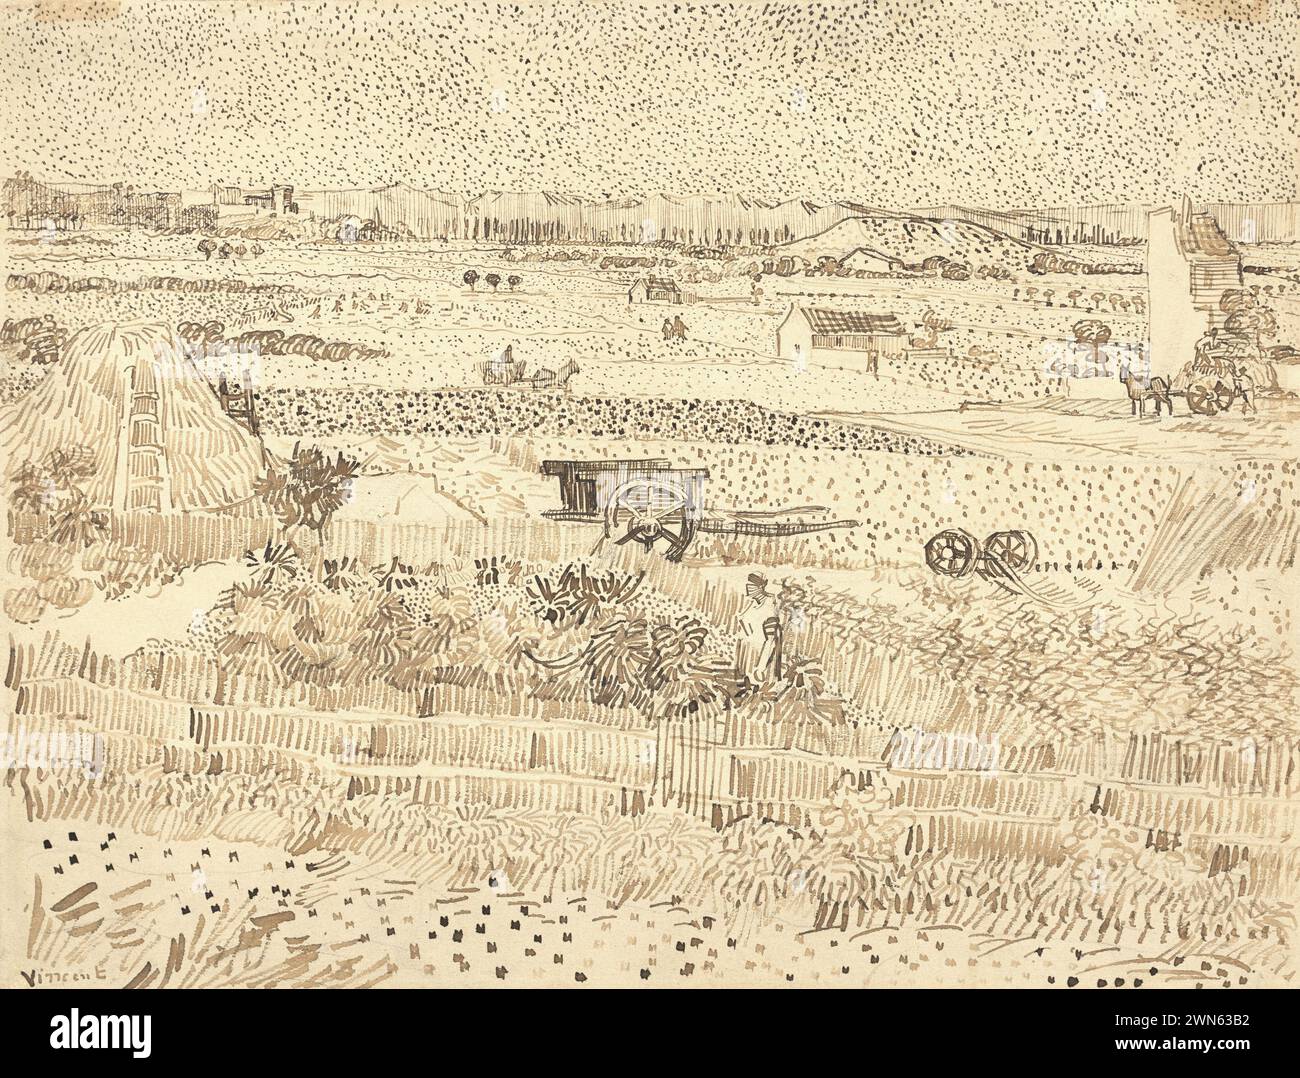 Van Gogh Vincent - Harvest, The Plain of La Crau (1888) Stock Photo